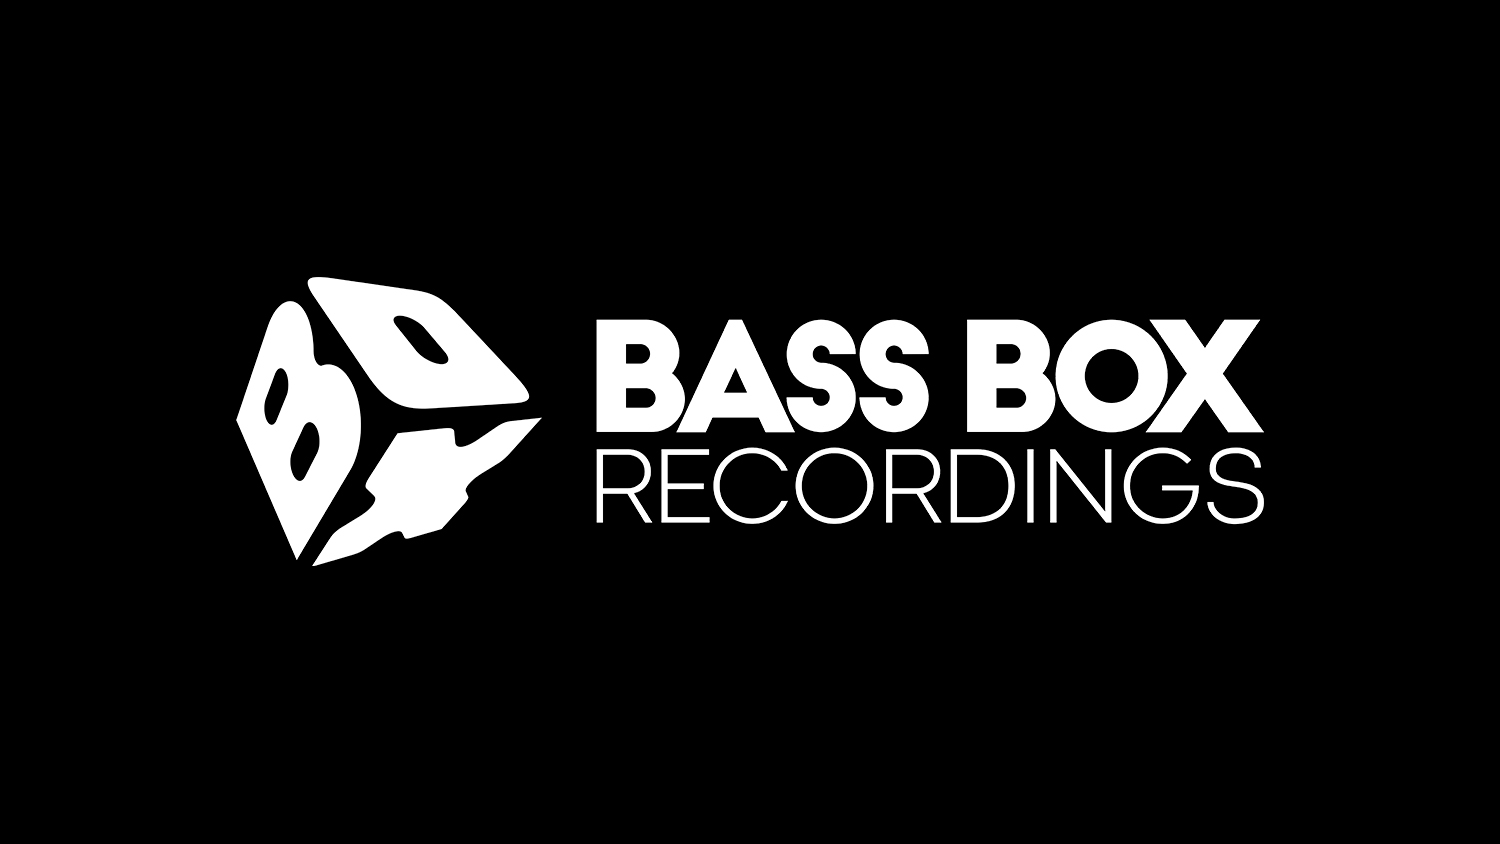 Bass Box Recordings  Gravadora brasileira de música eletrônica